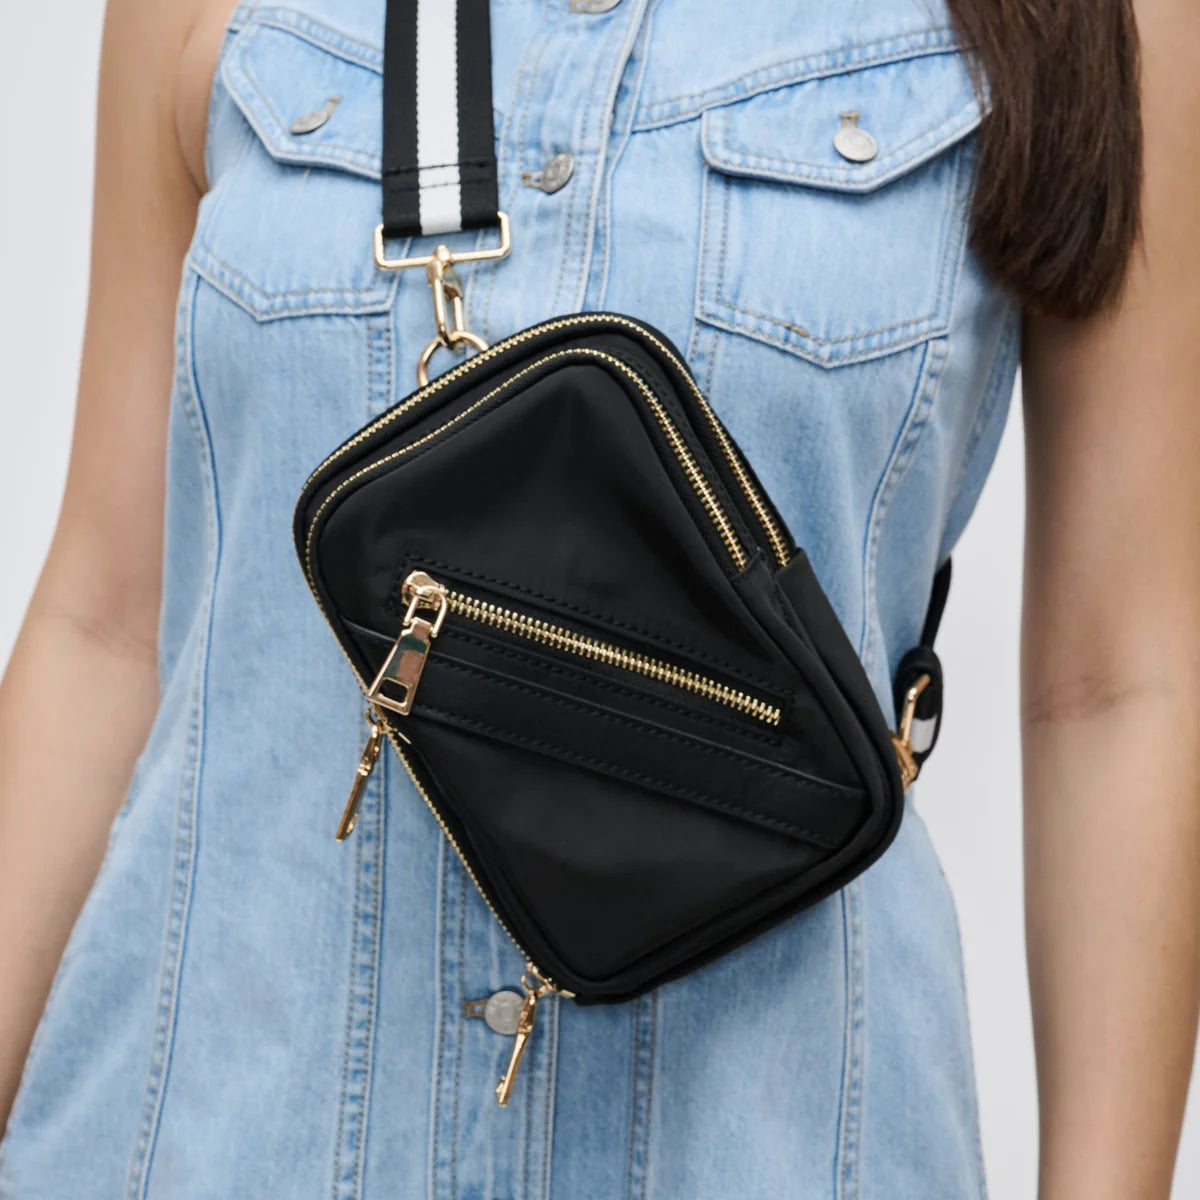 model wearing a black sling bag